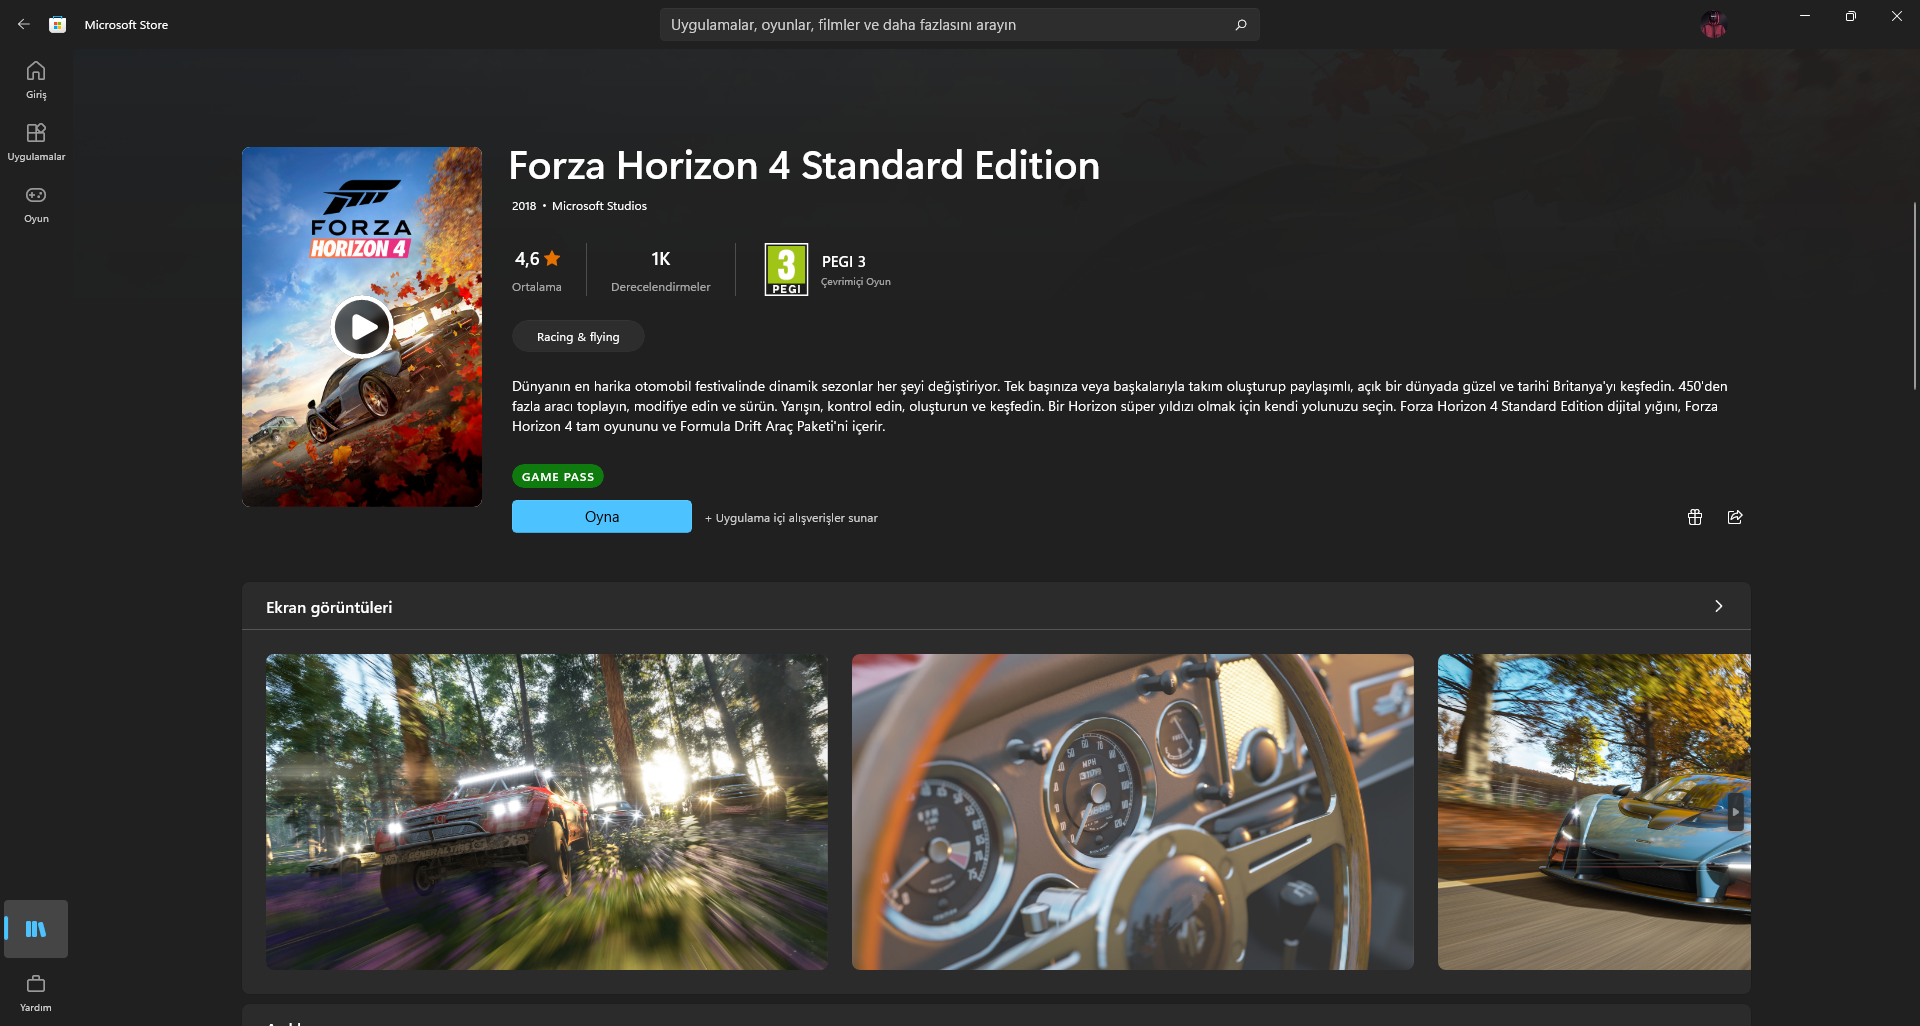 Çözüldü: Forza Horizon 4 yüklü olmamasına rağmen oyna seçeneği var |  Technopat Sosyal